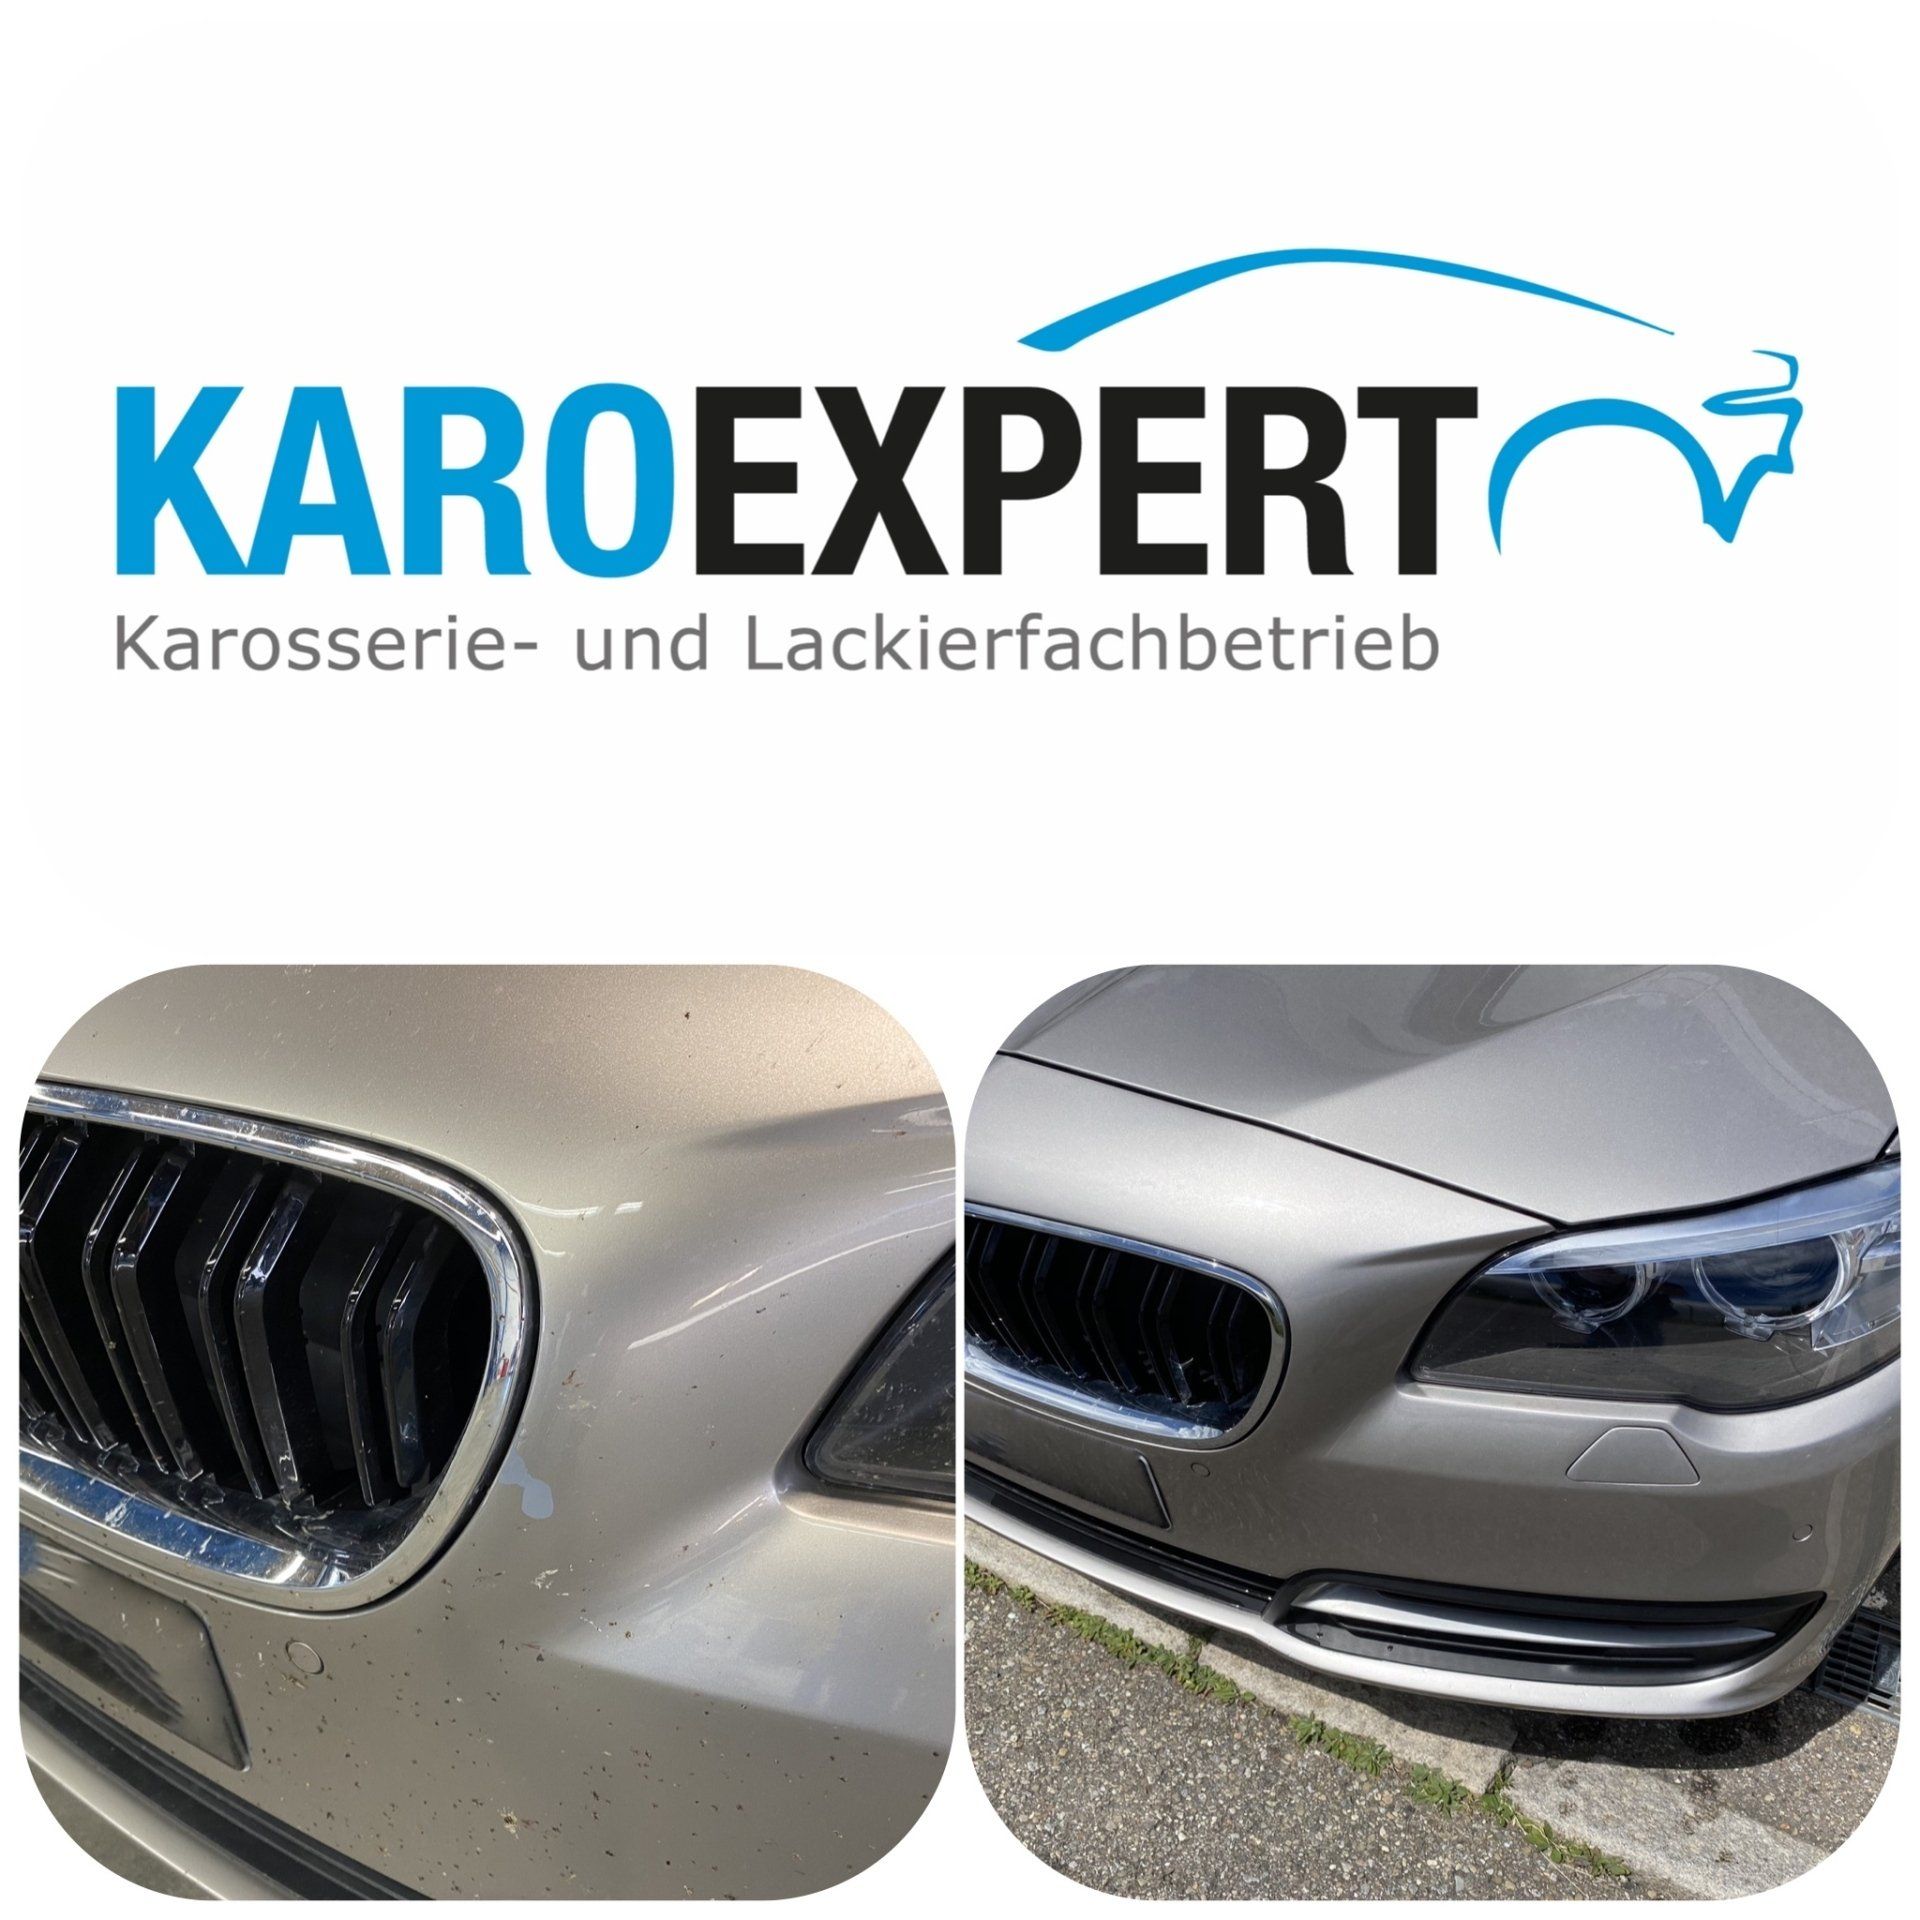 KaroExpert Dienstleistungen Karosserie und Lackierung in